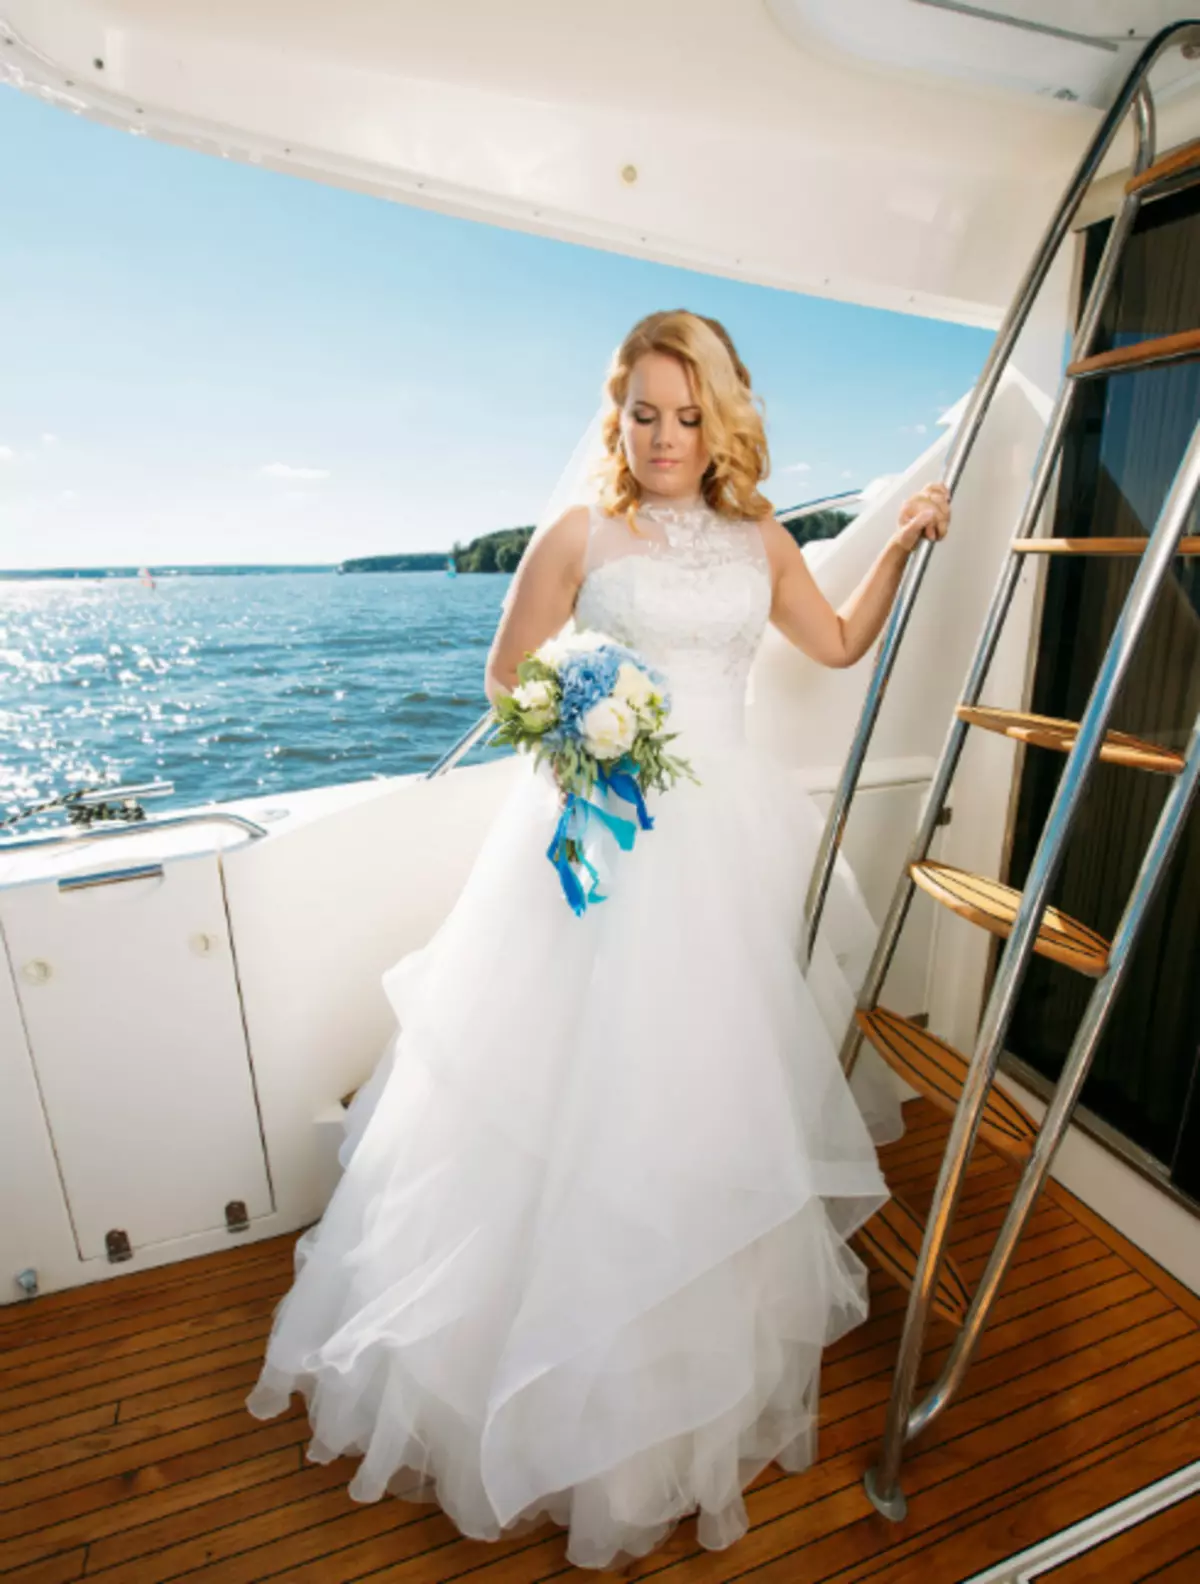 캐스케이드 스커트가있는 웨딩 드레스는 신부가 오픈 에어 결혼식에서 저항 할 수 없게됩니다.